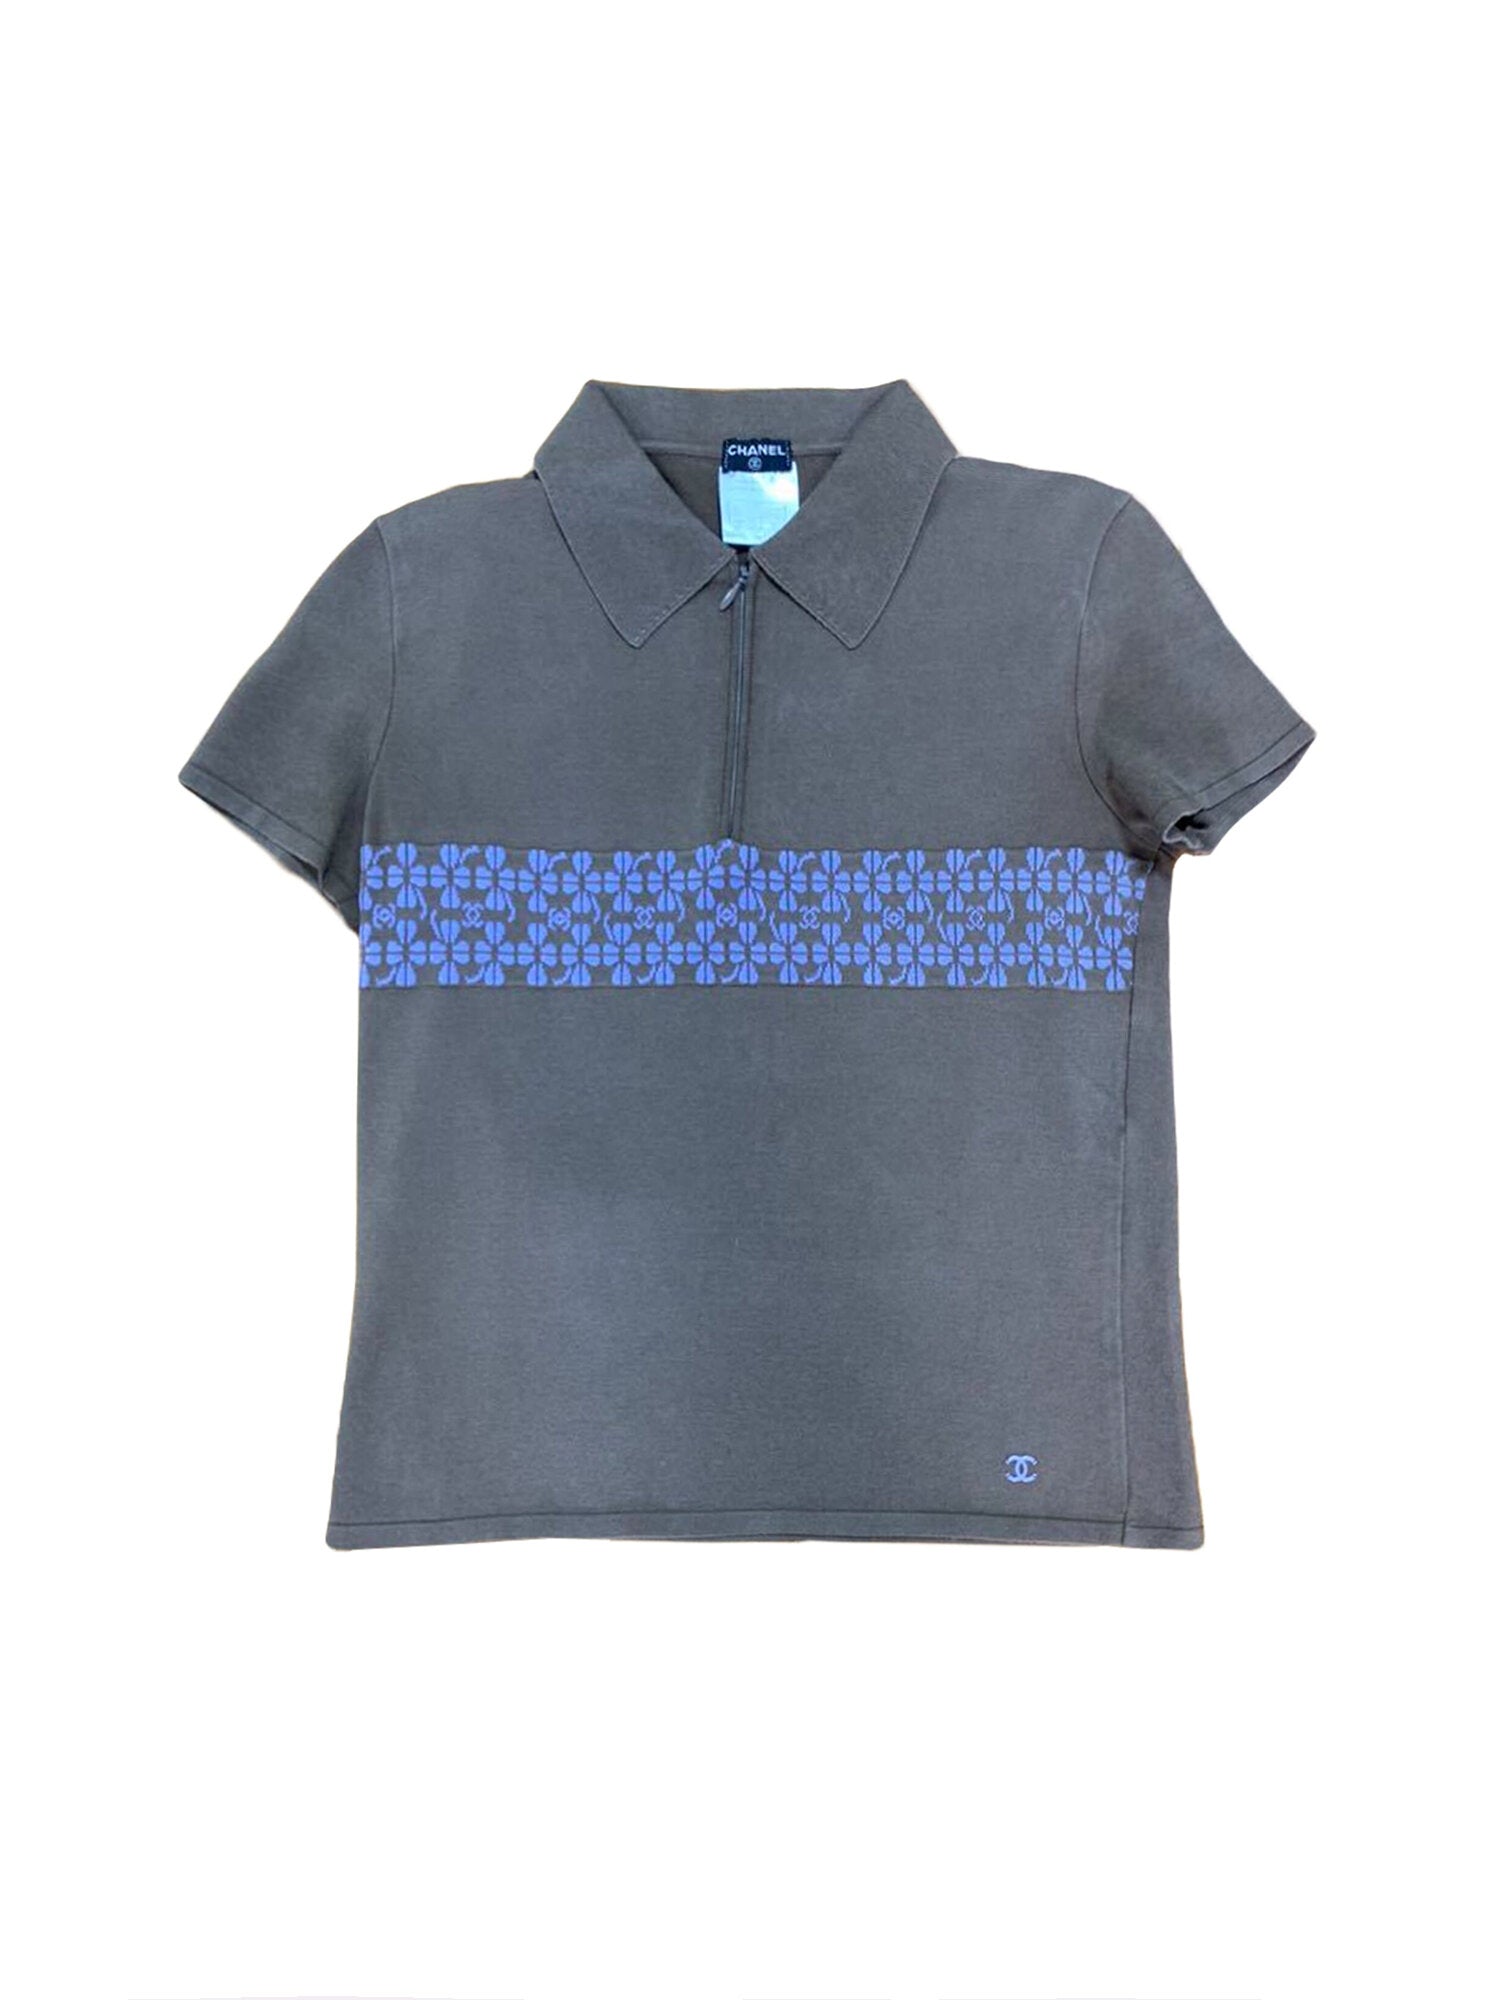 LOUIS VUITTON RW201A TSO FIBL53 Monogram Silk Open Collar Shirt/ tops 36  gray